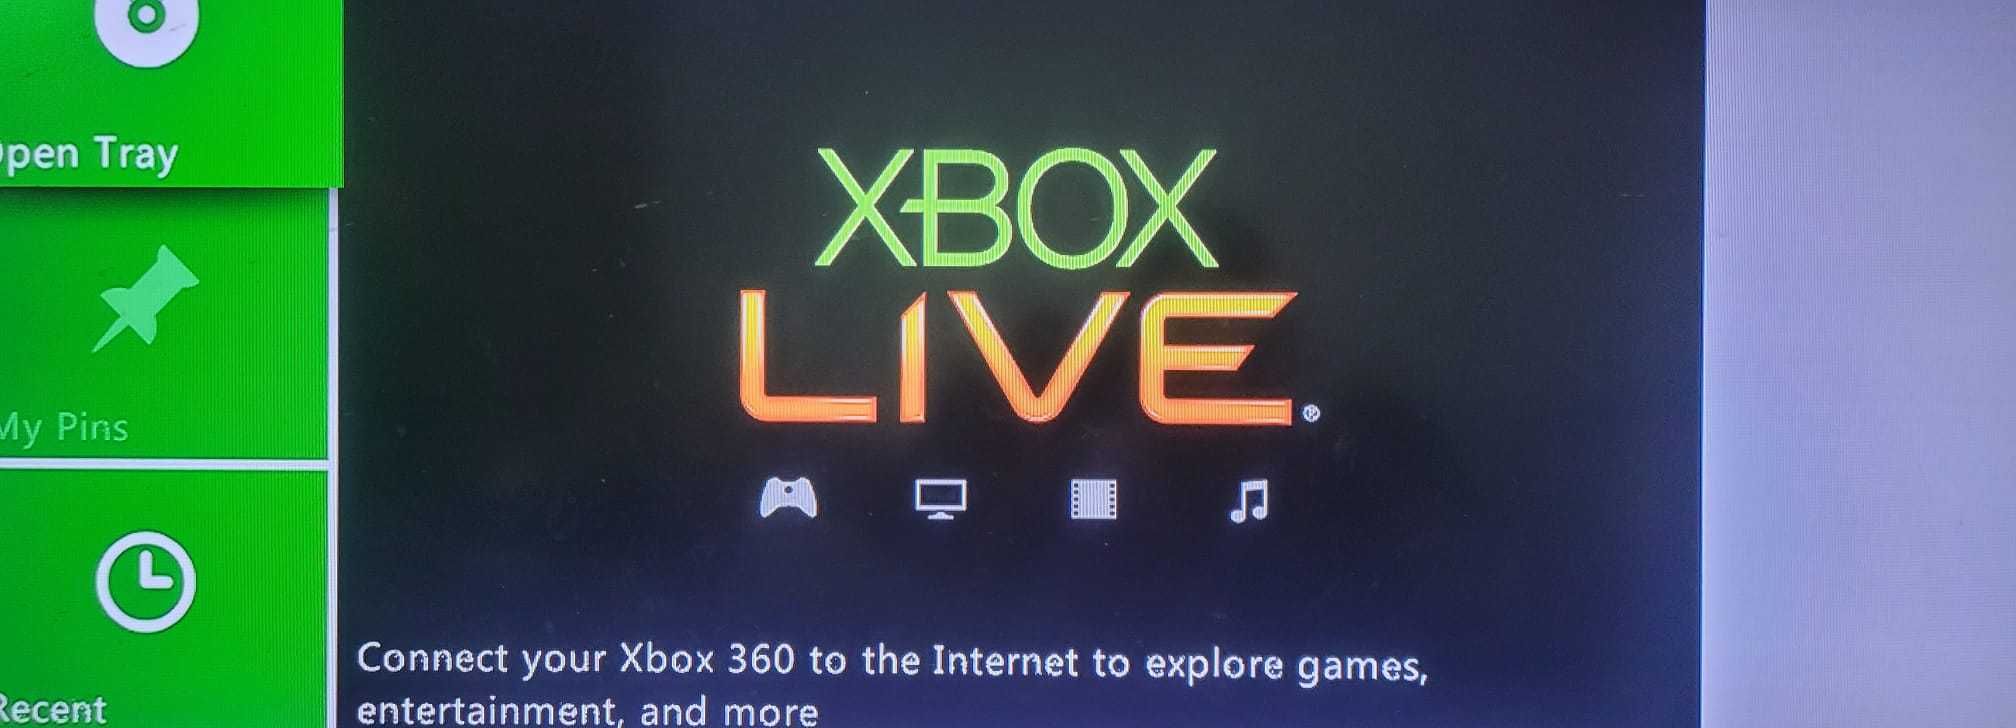 Xbox 360 slim 4gb defect si xbox 360 E